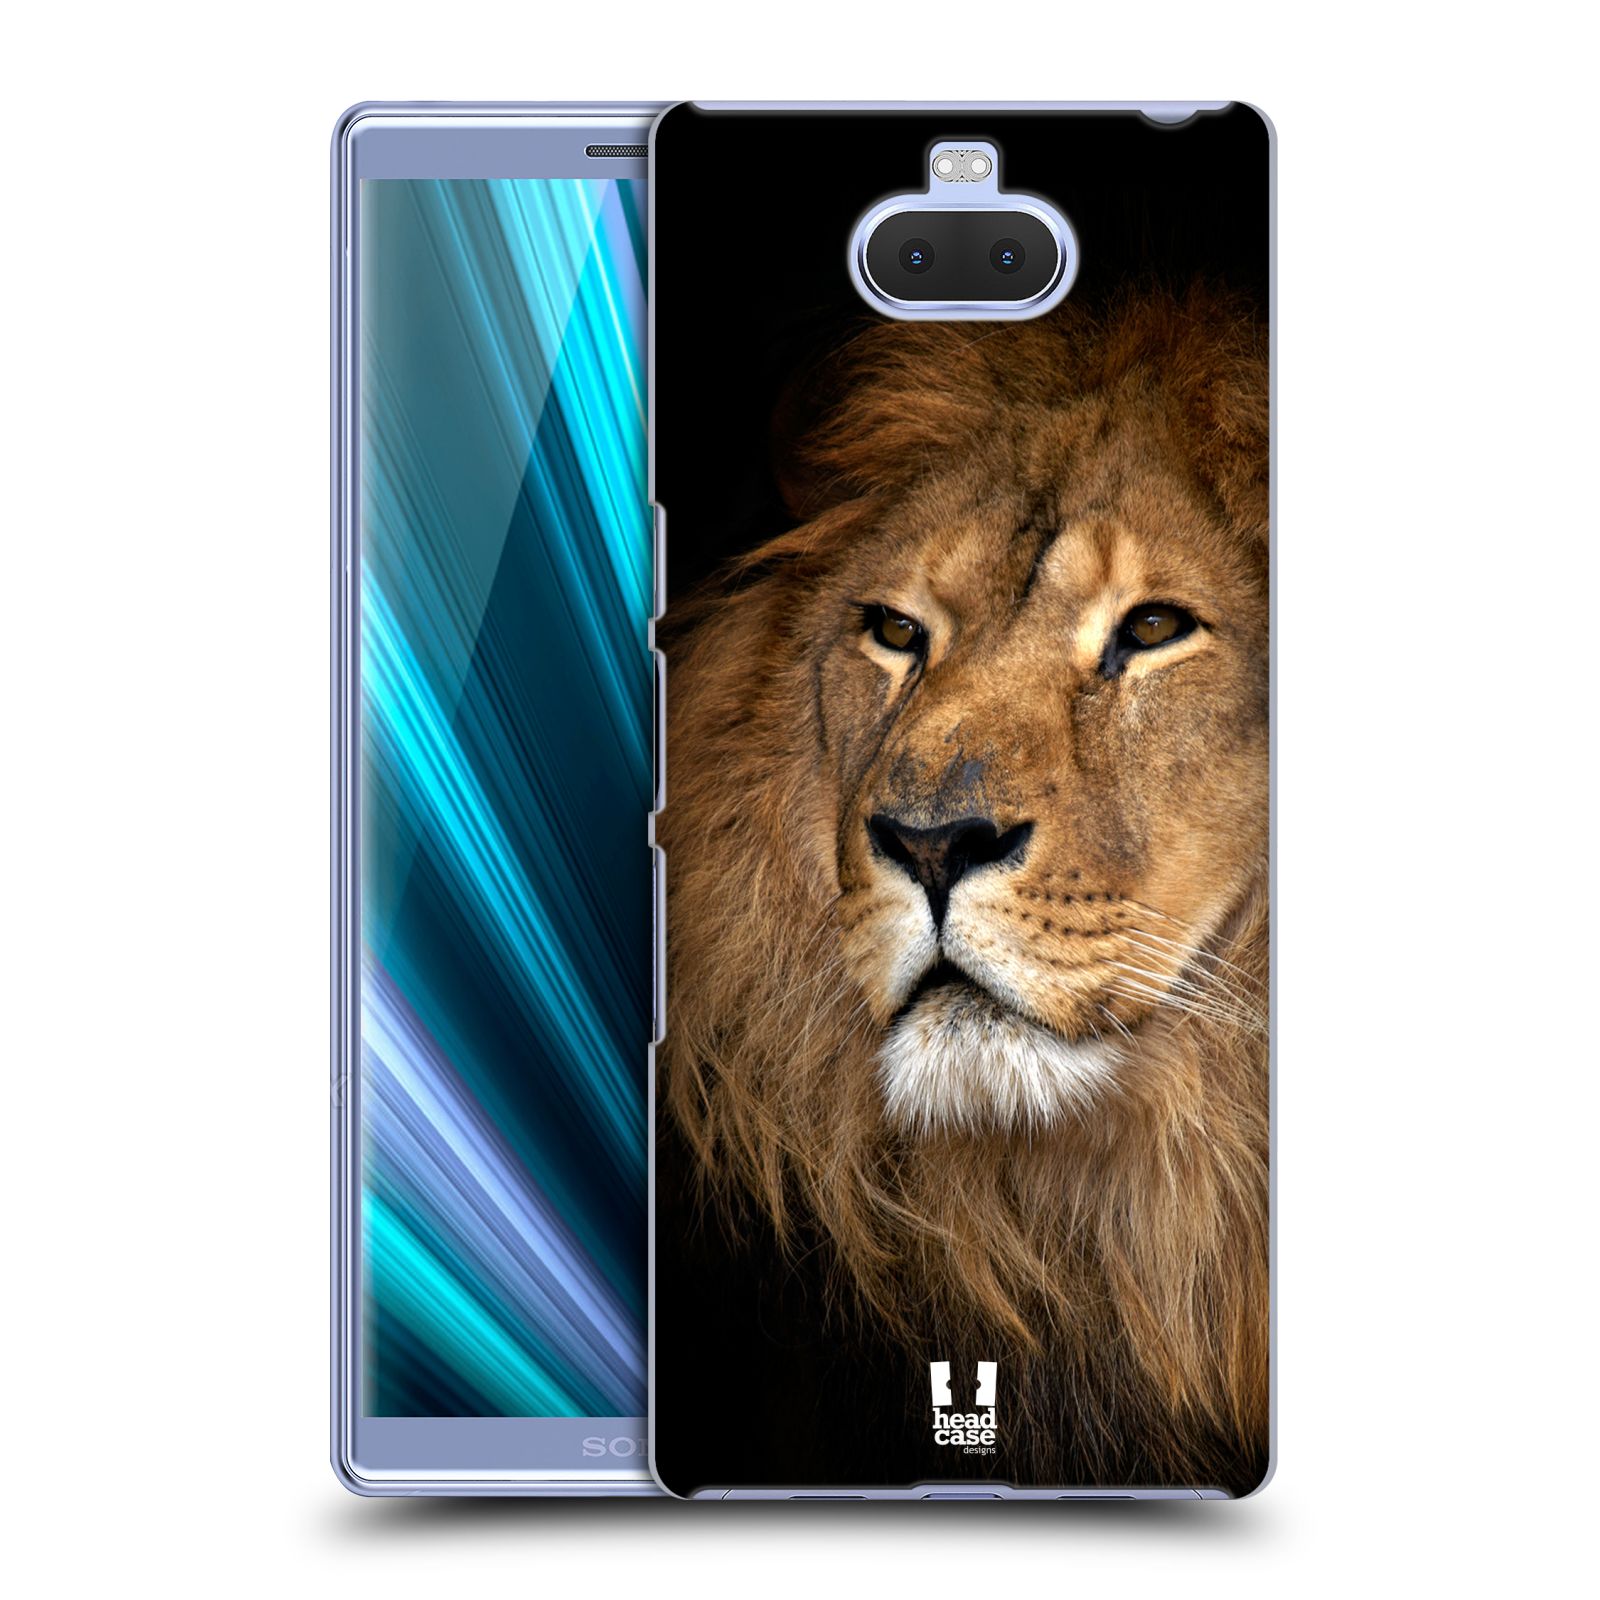 Zadní obal pro mobil Sony Xperia 10 ULTRA - HEAD CASE - Svět zvířat král zvířat Lev